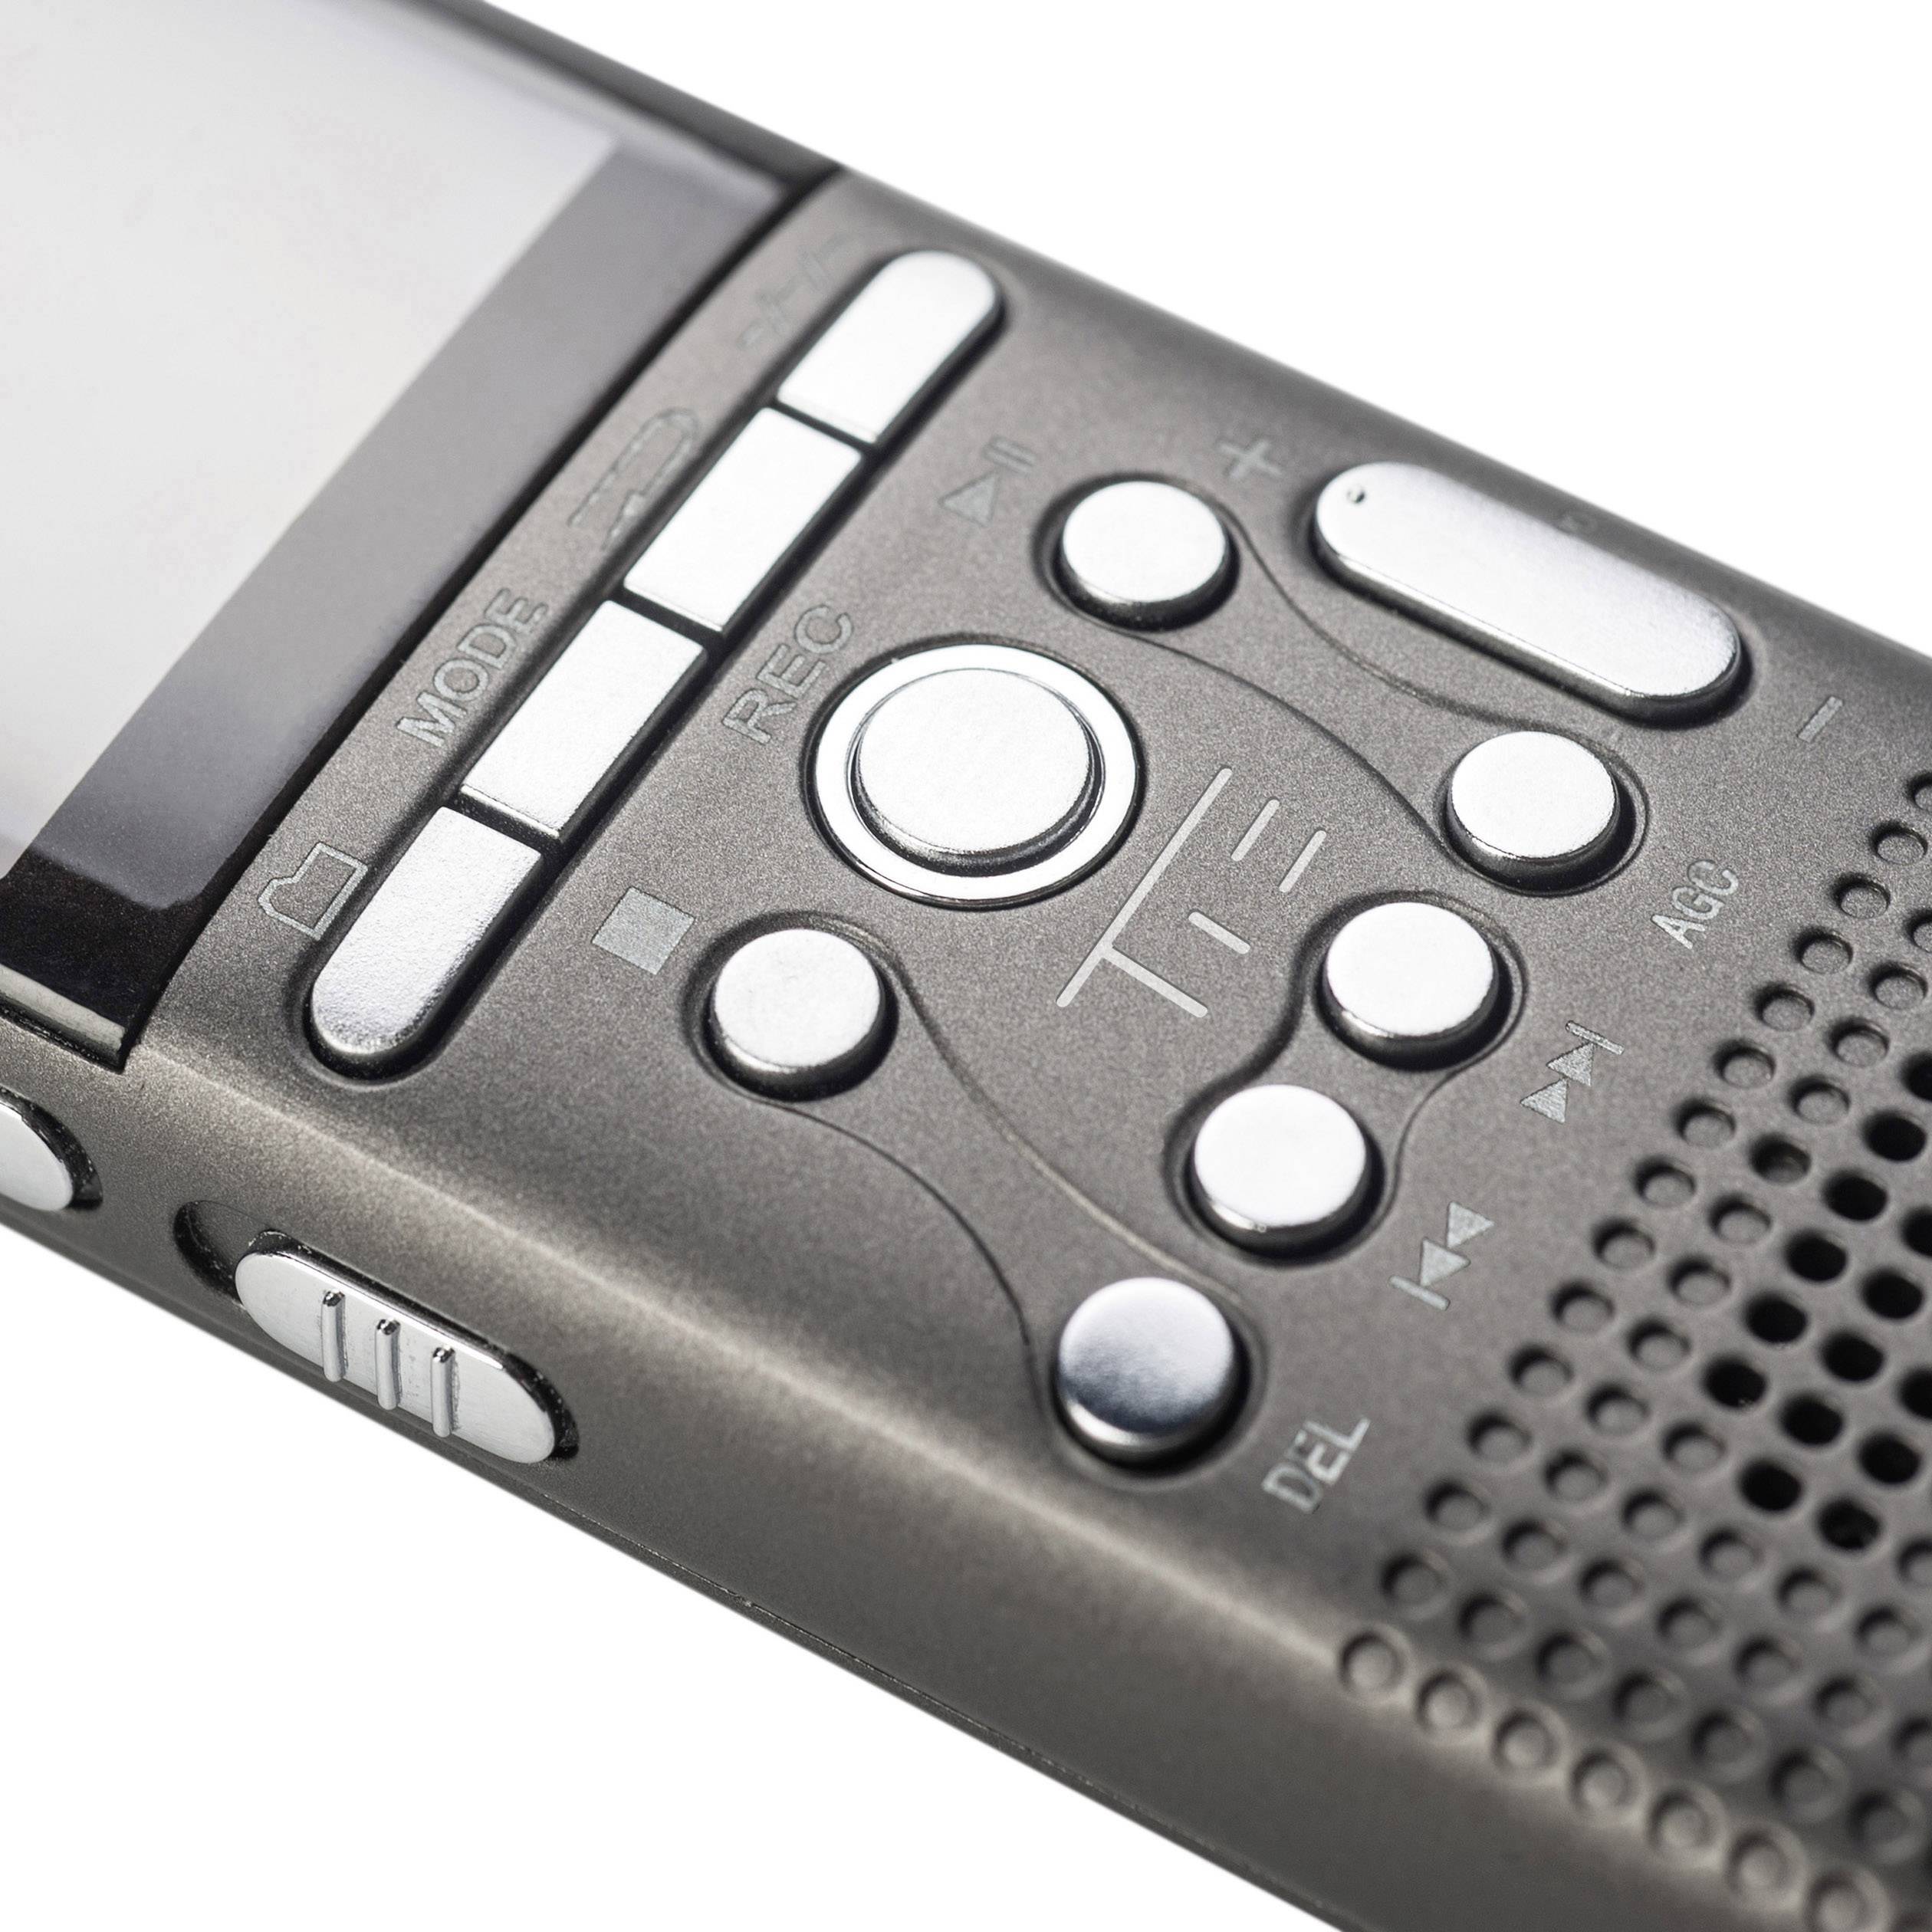 Portable audio recorder Tie TX26 Black | Conrad.com